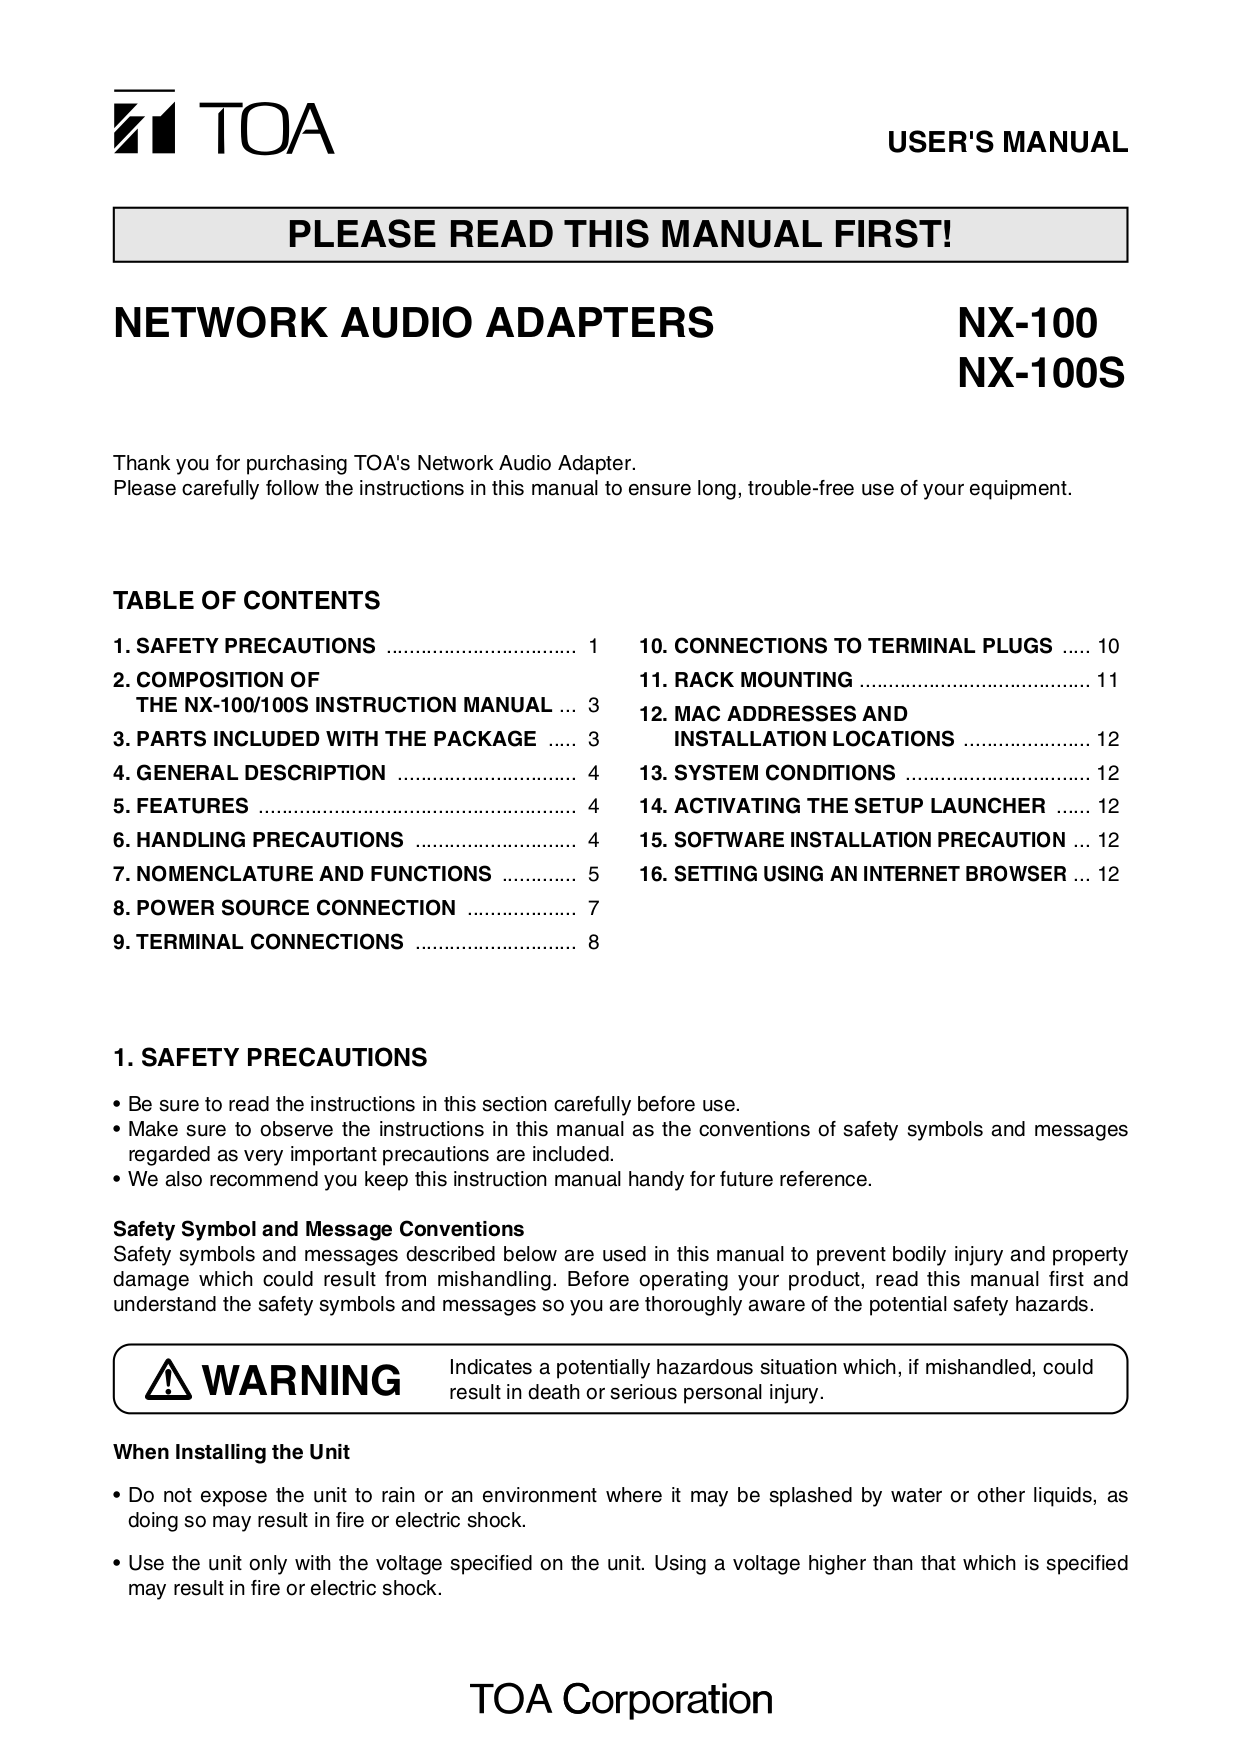 Siemens Nx 12 User Manual Pdf